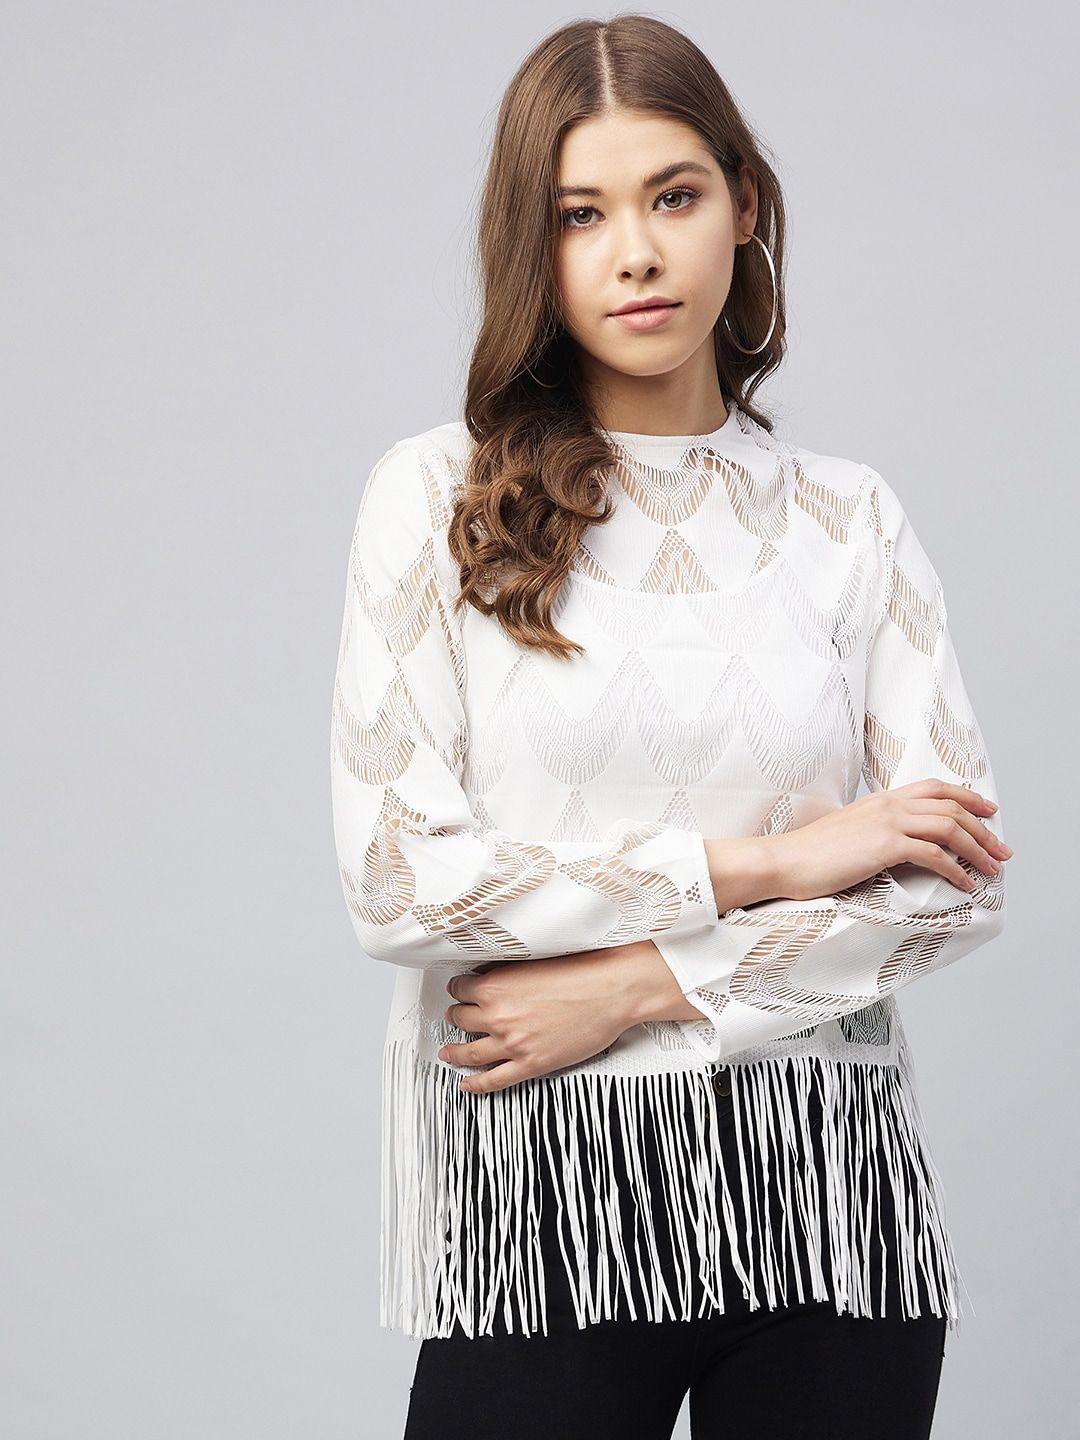 stylestone white fringed lace top